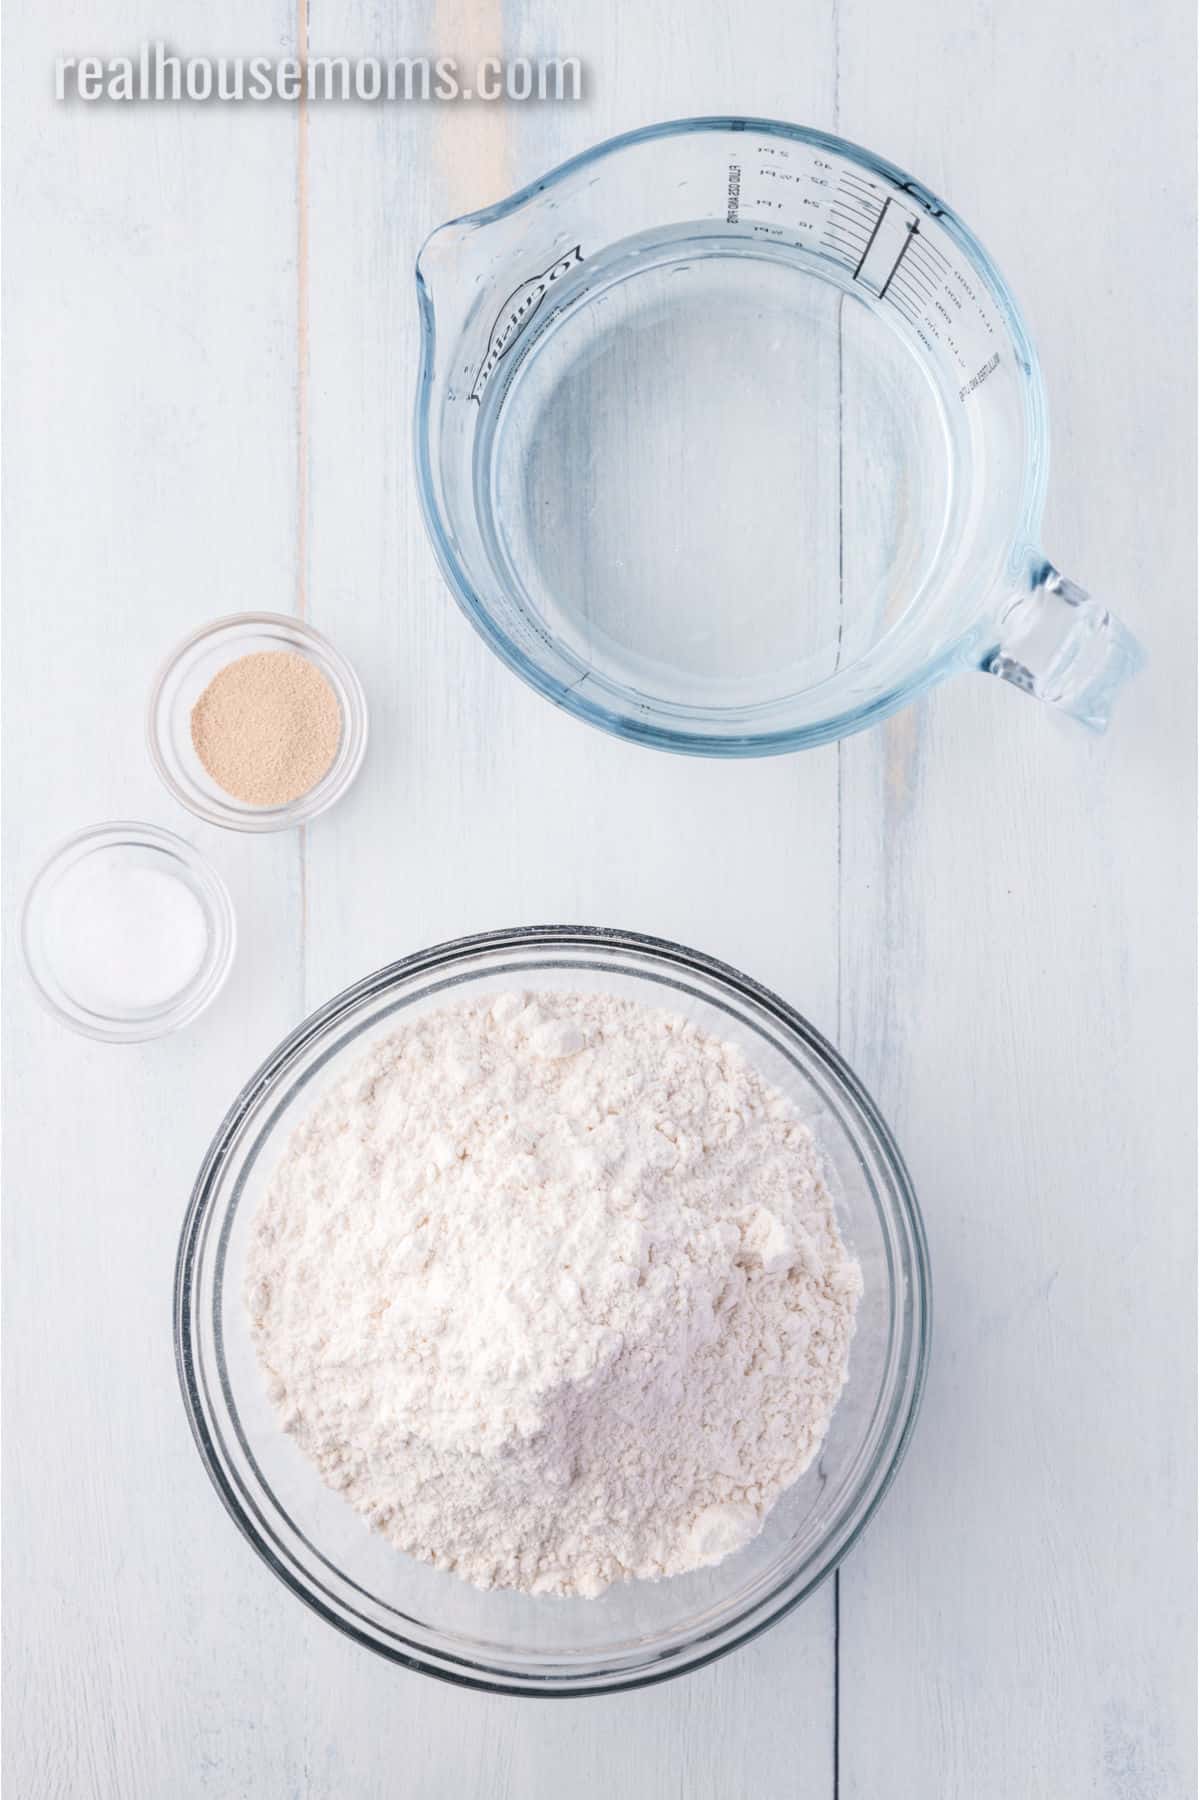 Dutch Oven Baking - Atta Durum Flour and K.A. Bread Flour